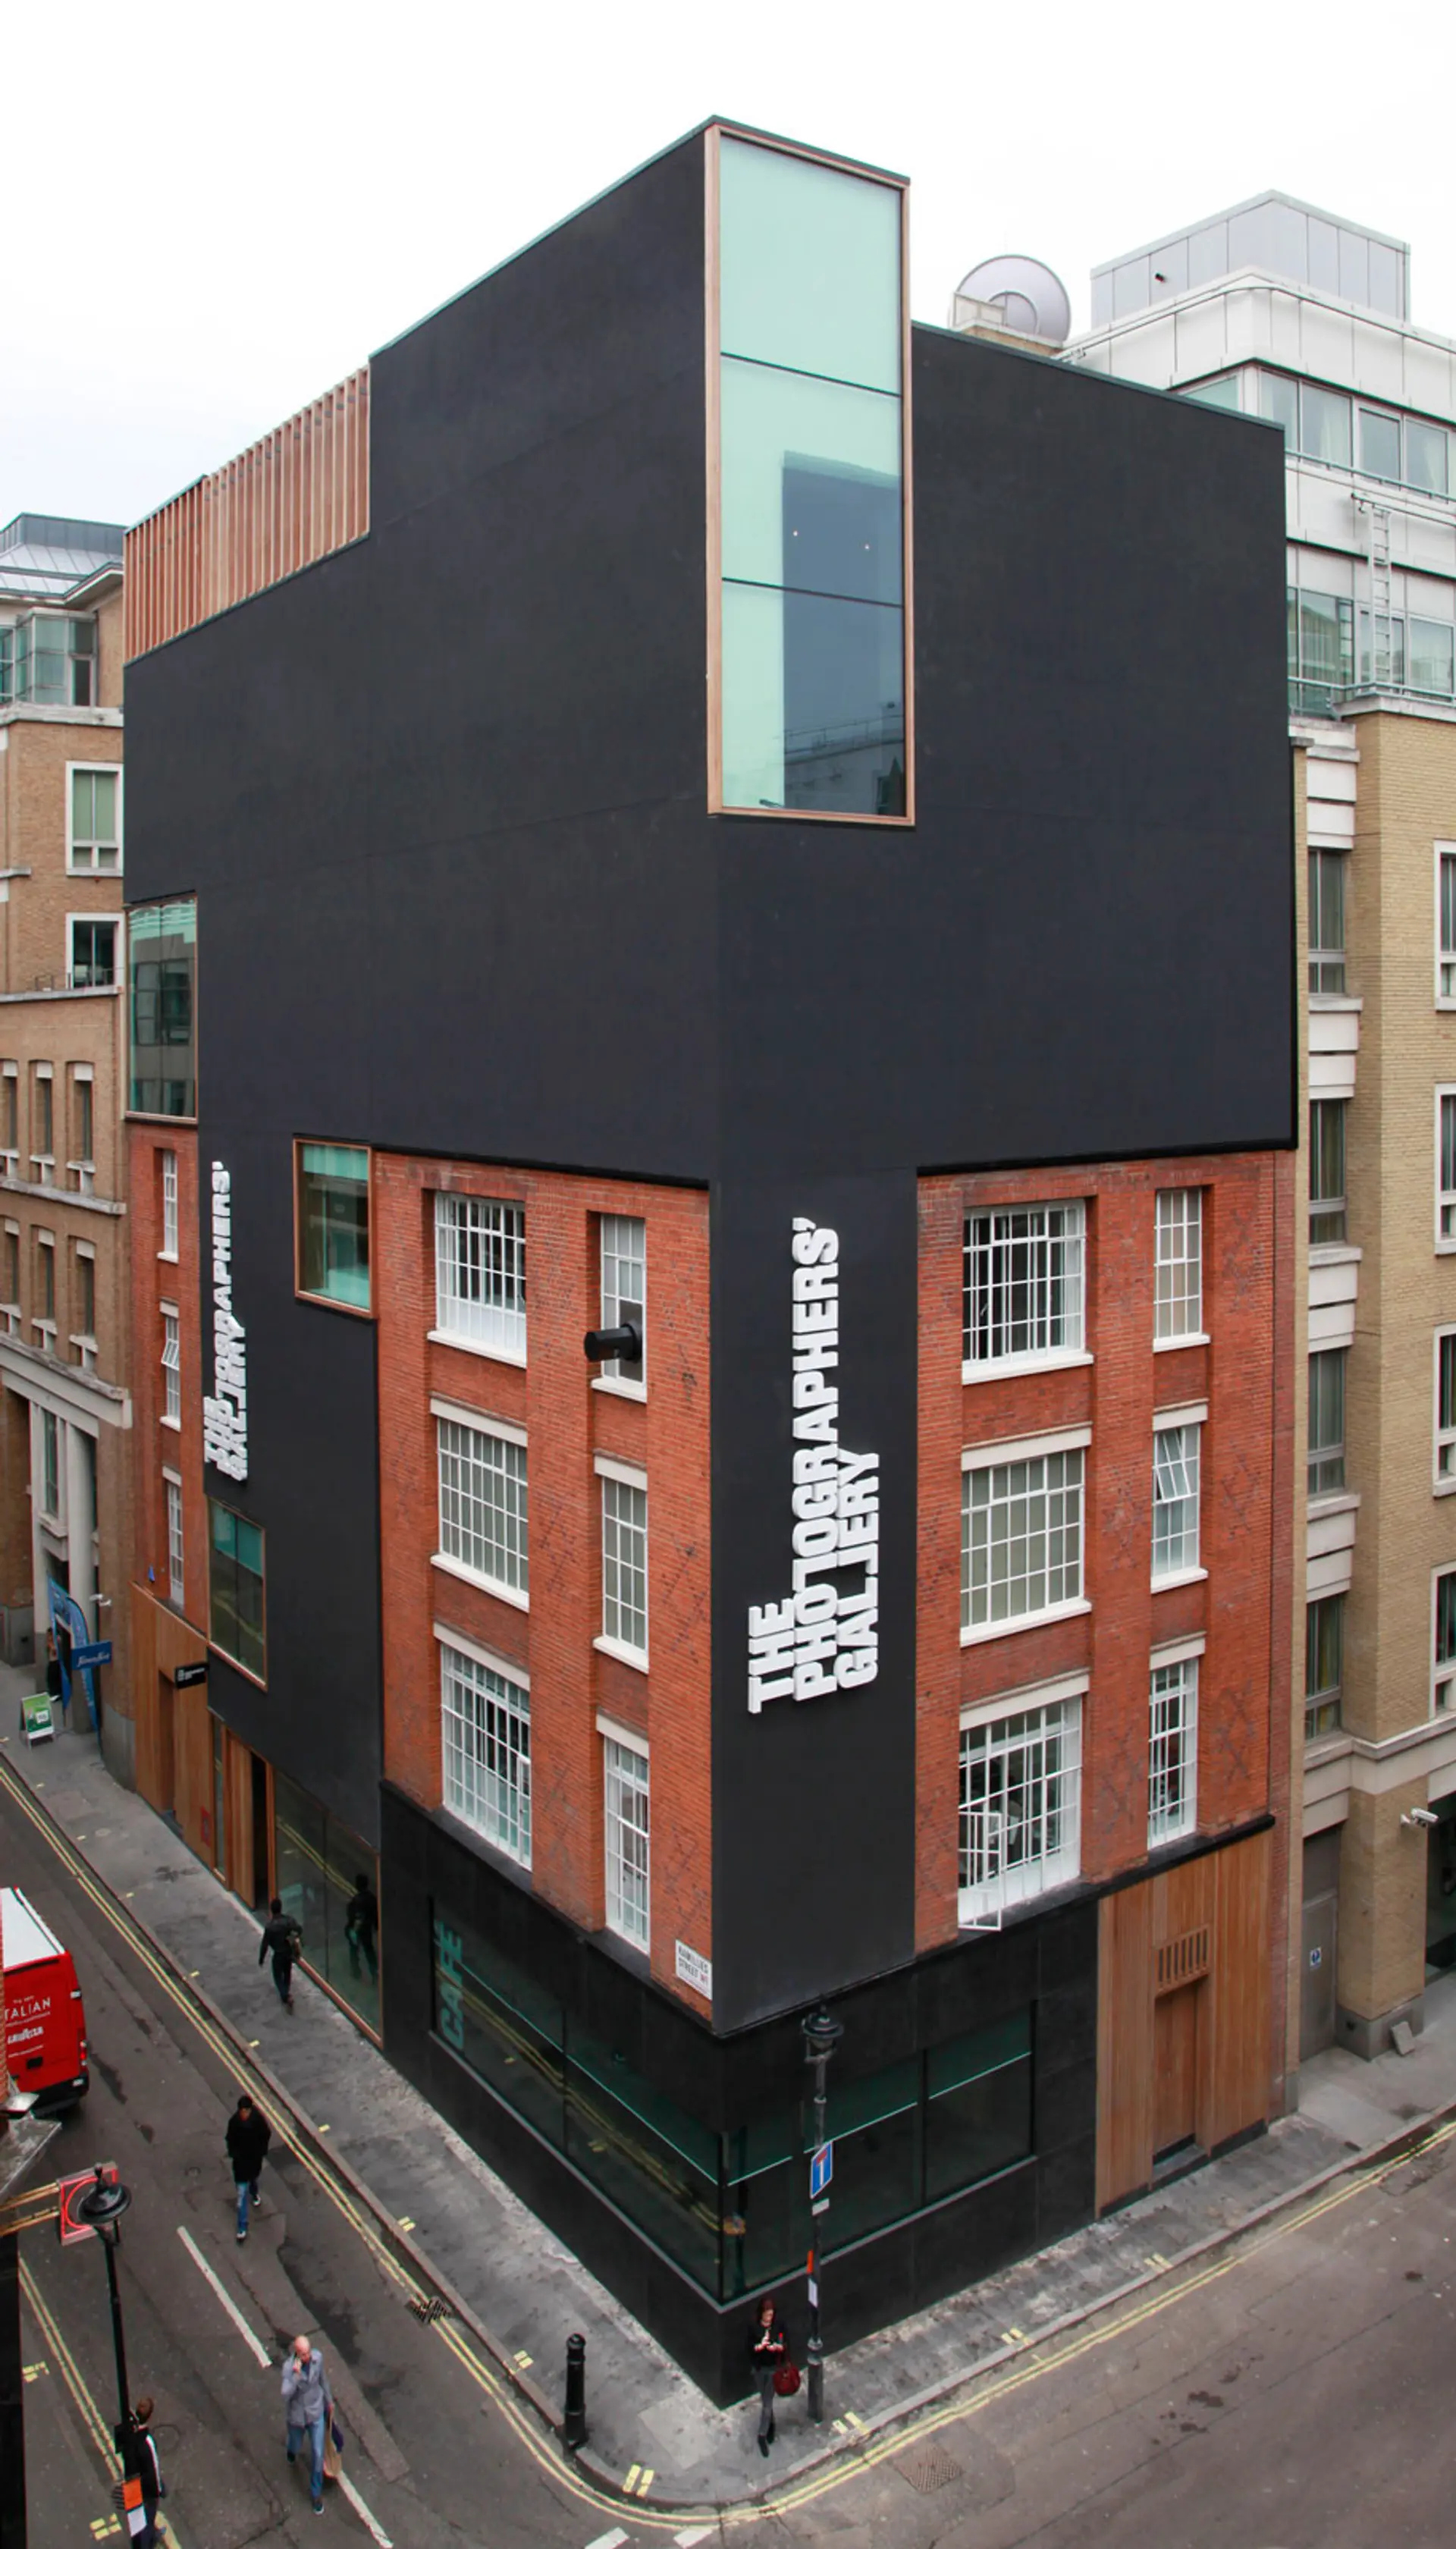 В 2012 году Галерея Фотографов переехала в свой новый дом недалеко от Оксфорд-стрит в Лондоне.